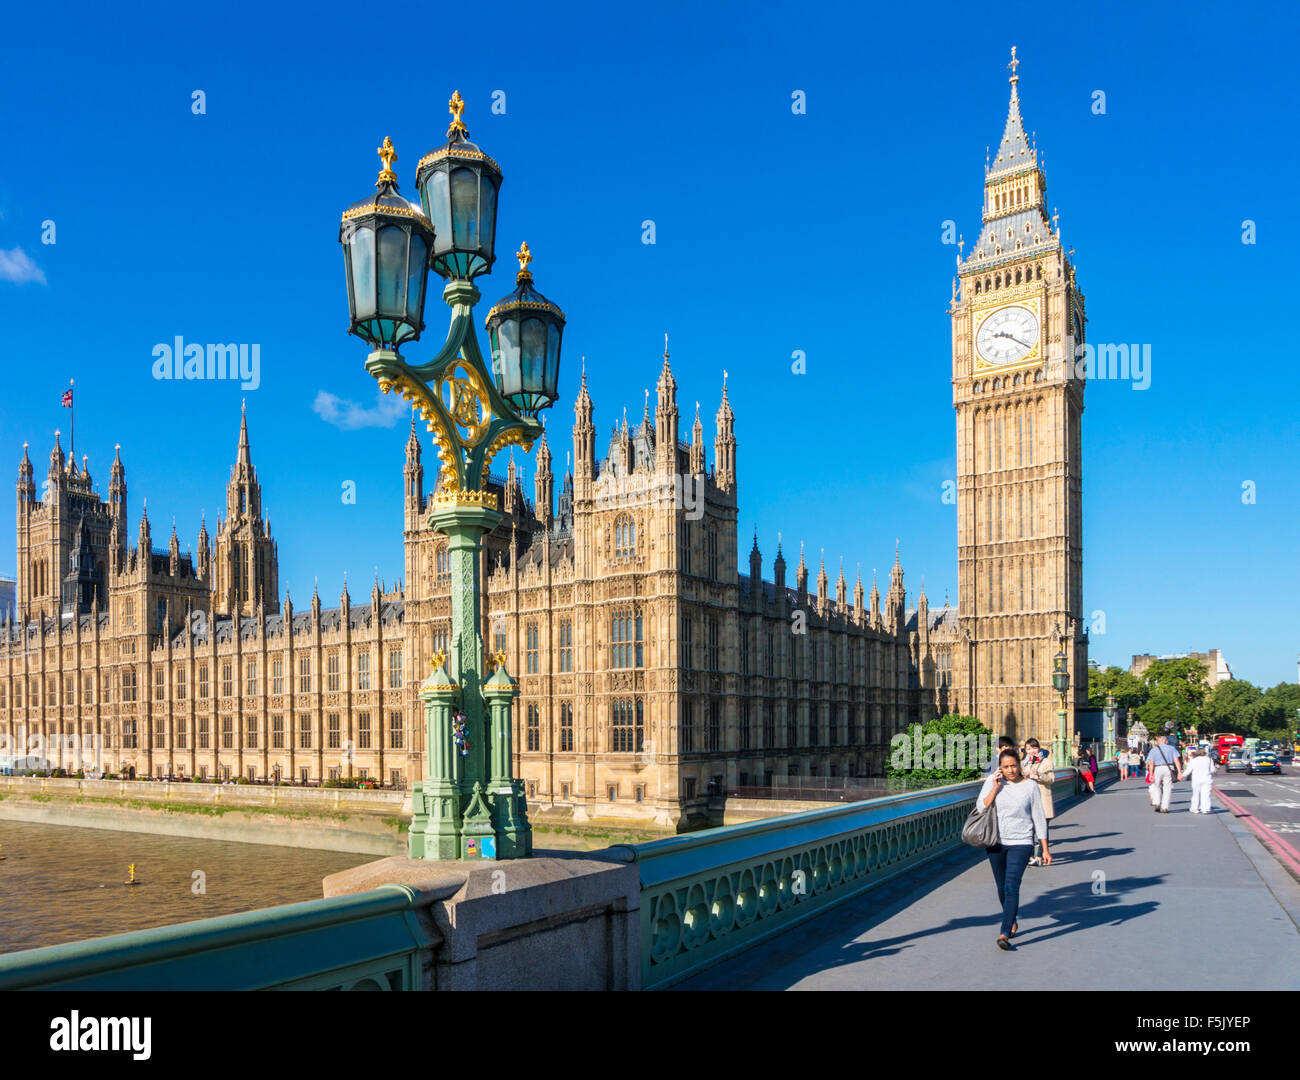 Les gens marcher sur le pont de Westminster avec les Chambres du Parlement et Big Ben derrière Ville de London England UK GB EU Europe Banque D'Images